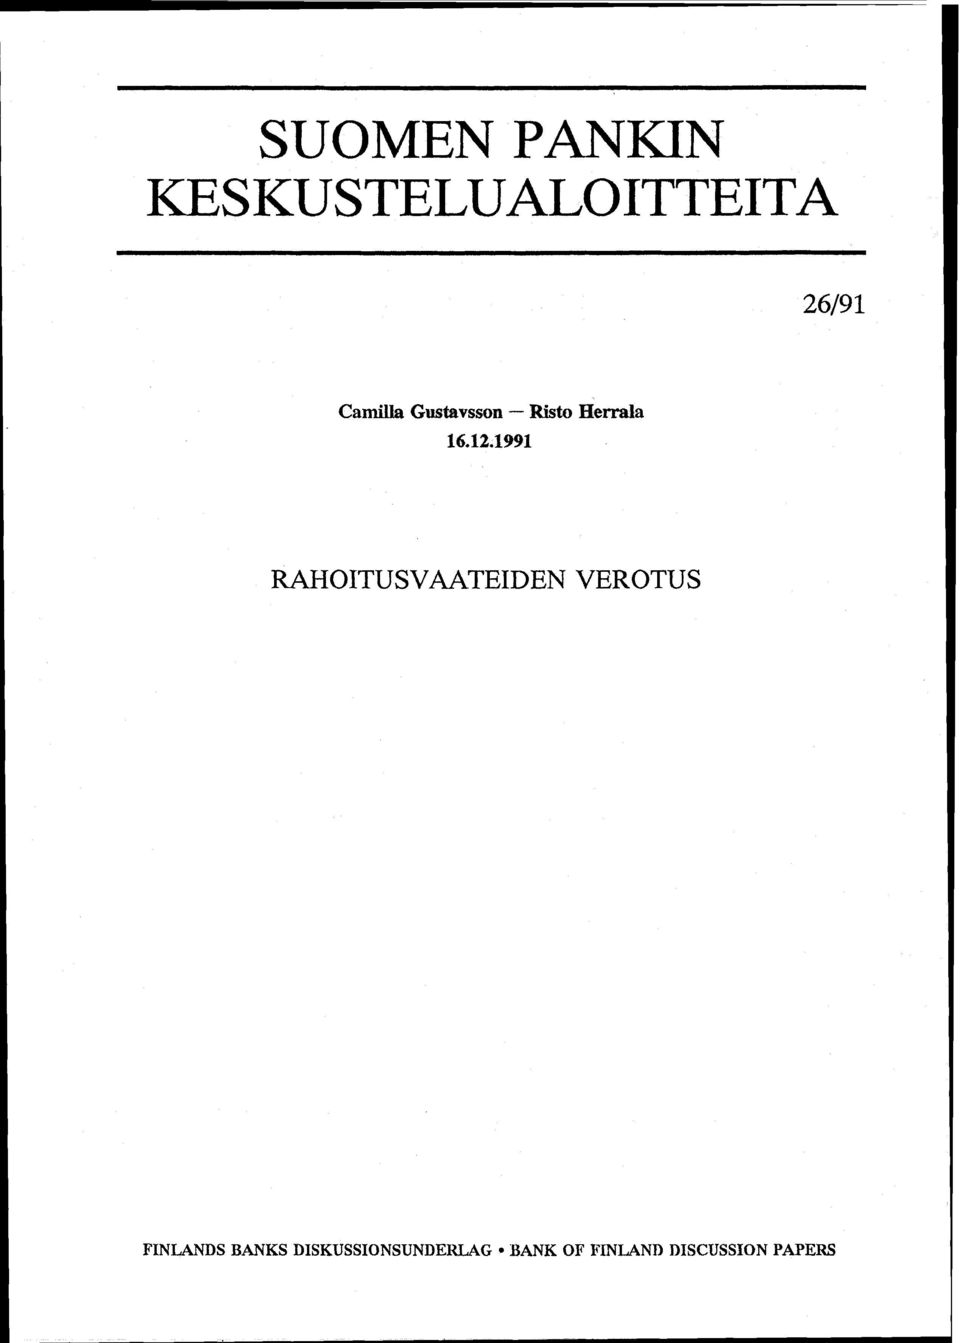 12~1991 RAHOITUSVAATEIDEN VEROTUS FINLANDS